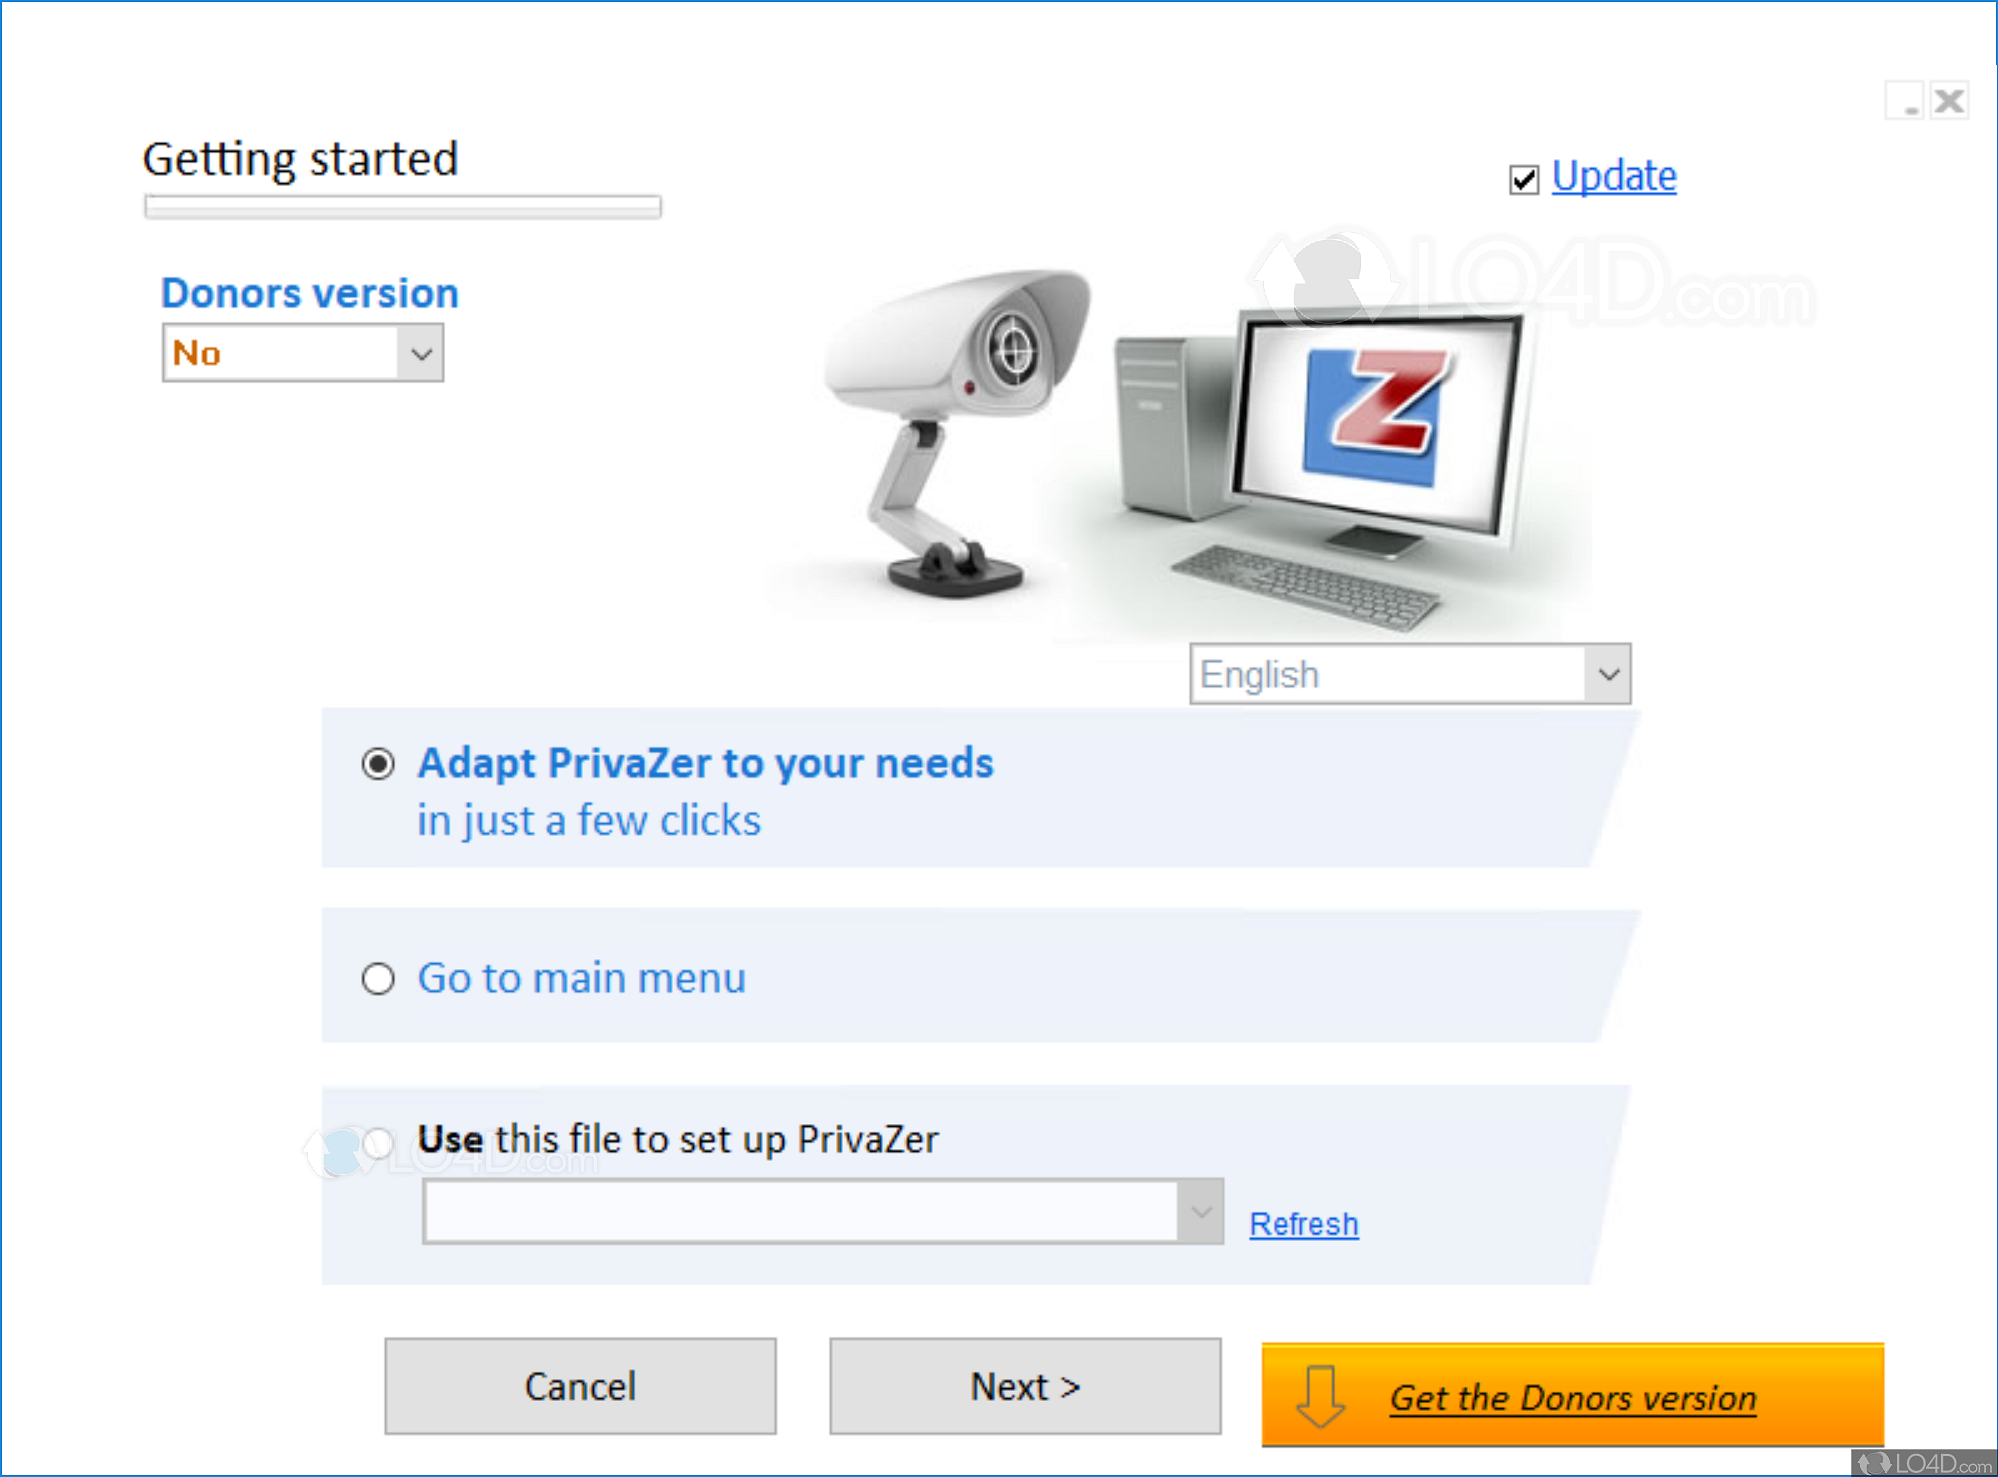 download the last version for windows PrivaZer 4.0.75